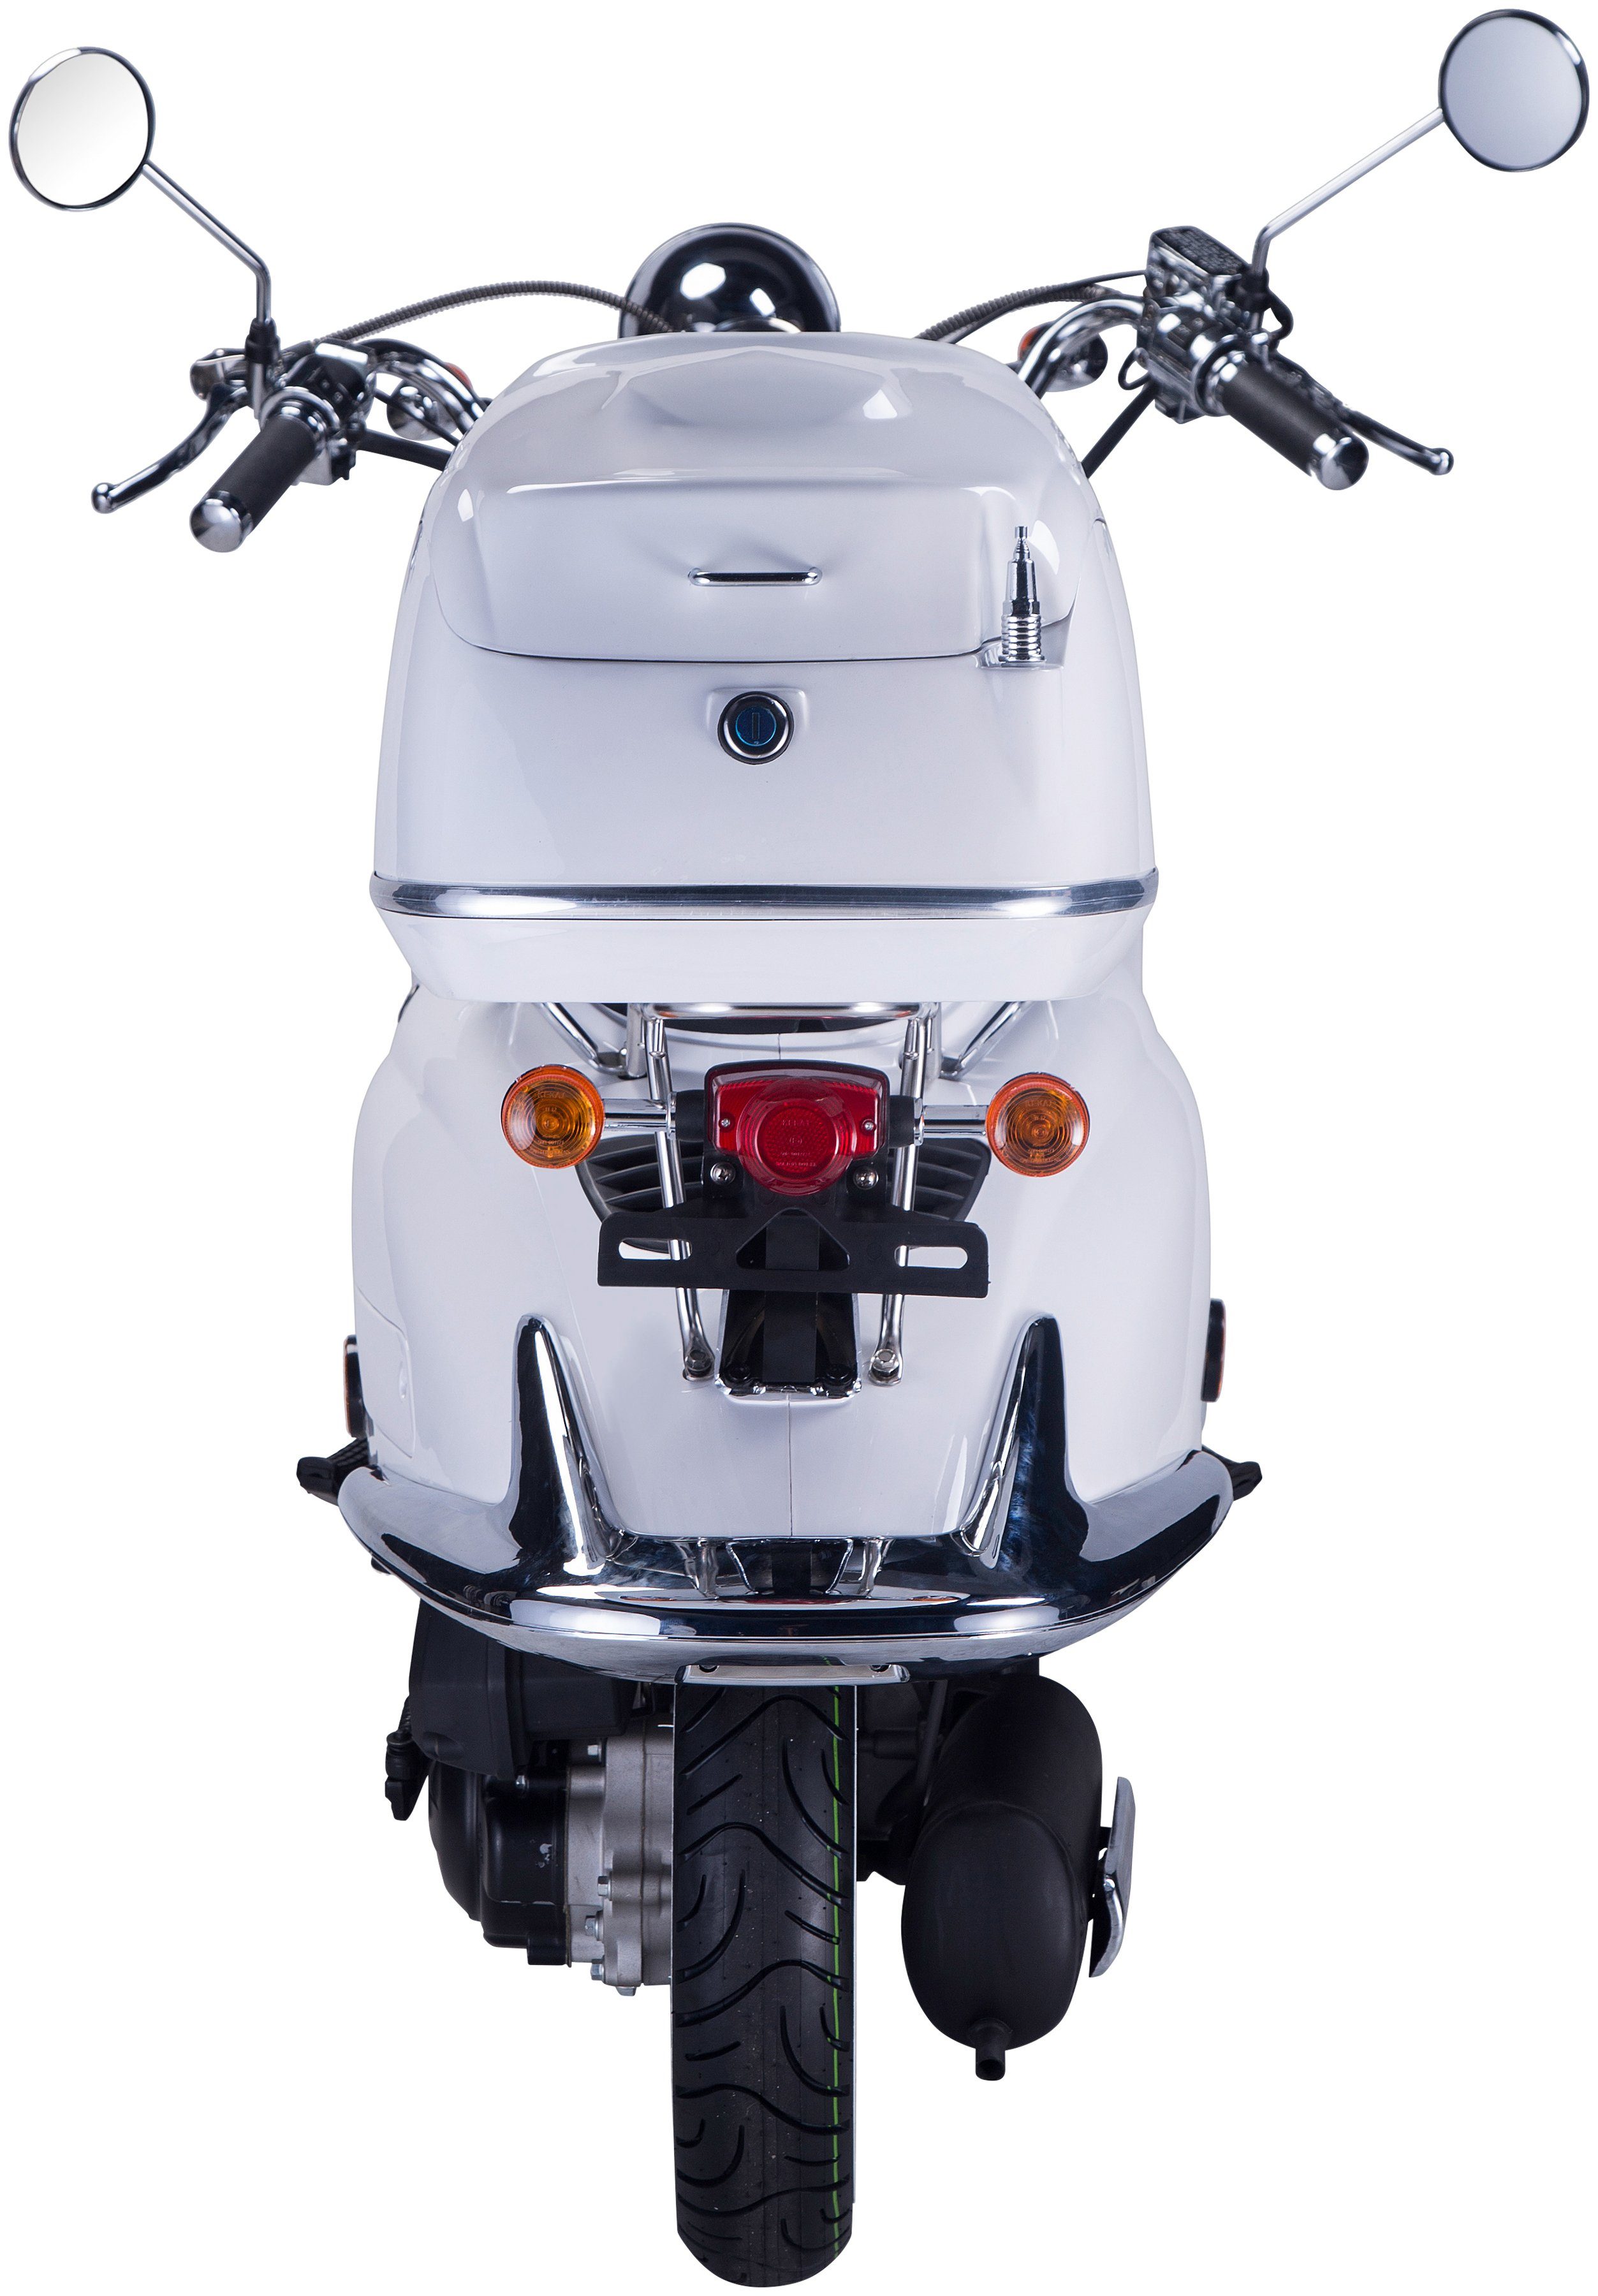 GT UNION Motorroller Strada, 50 Euro (Set), km/h, mit ccm, weiß 5, Topcase 45